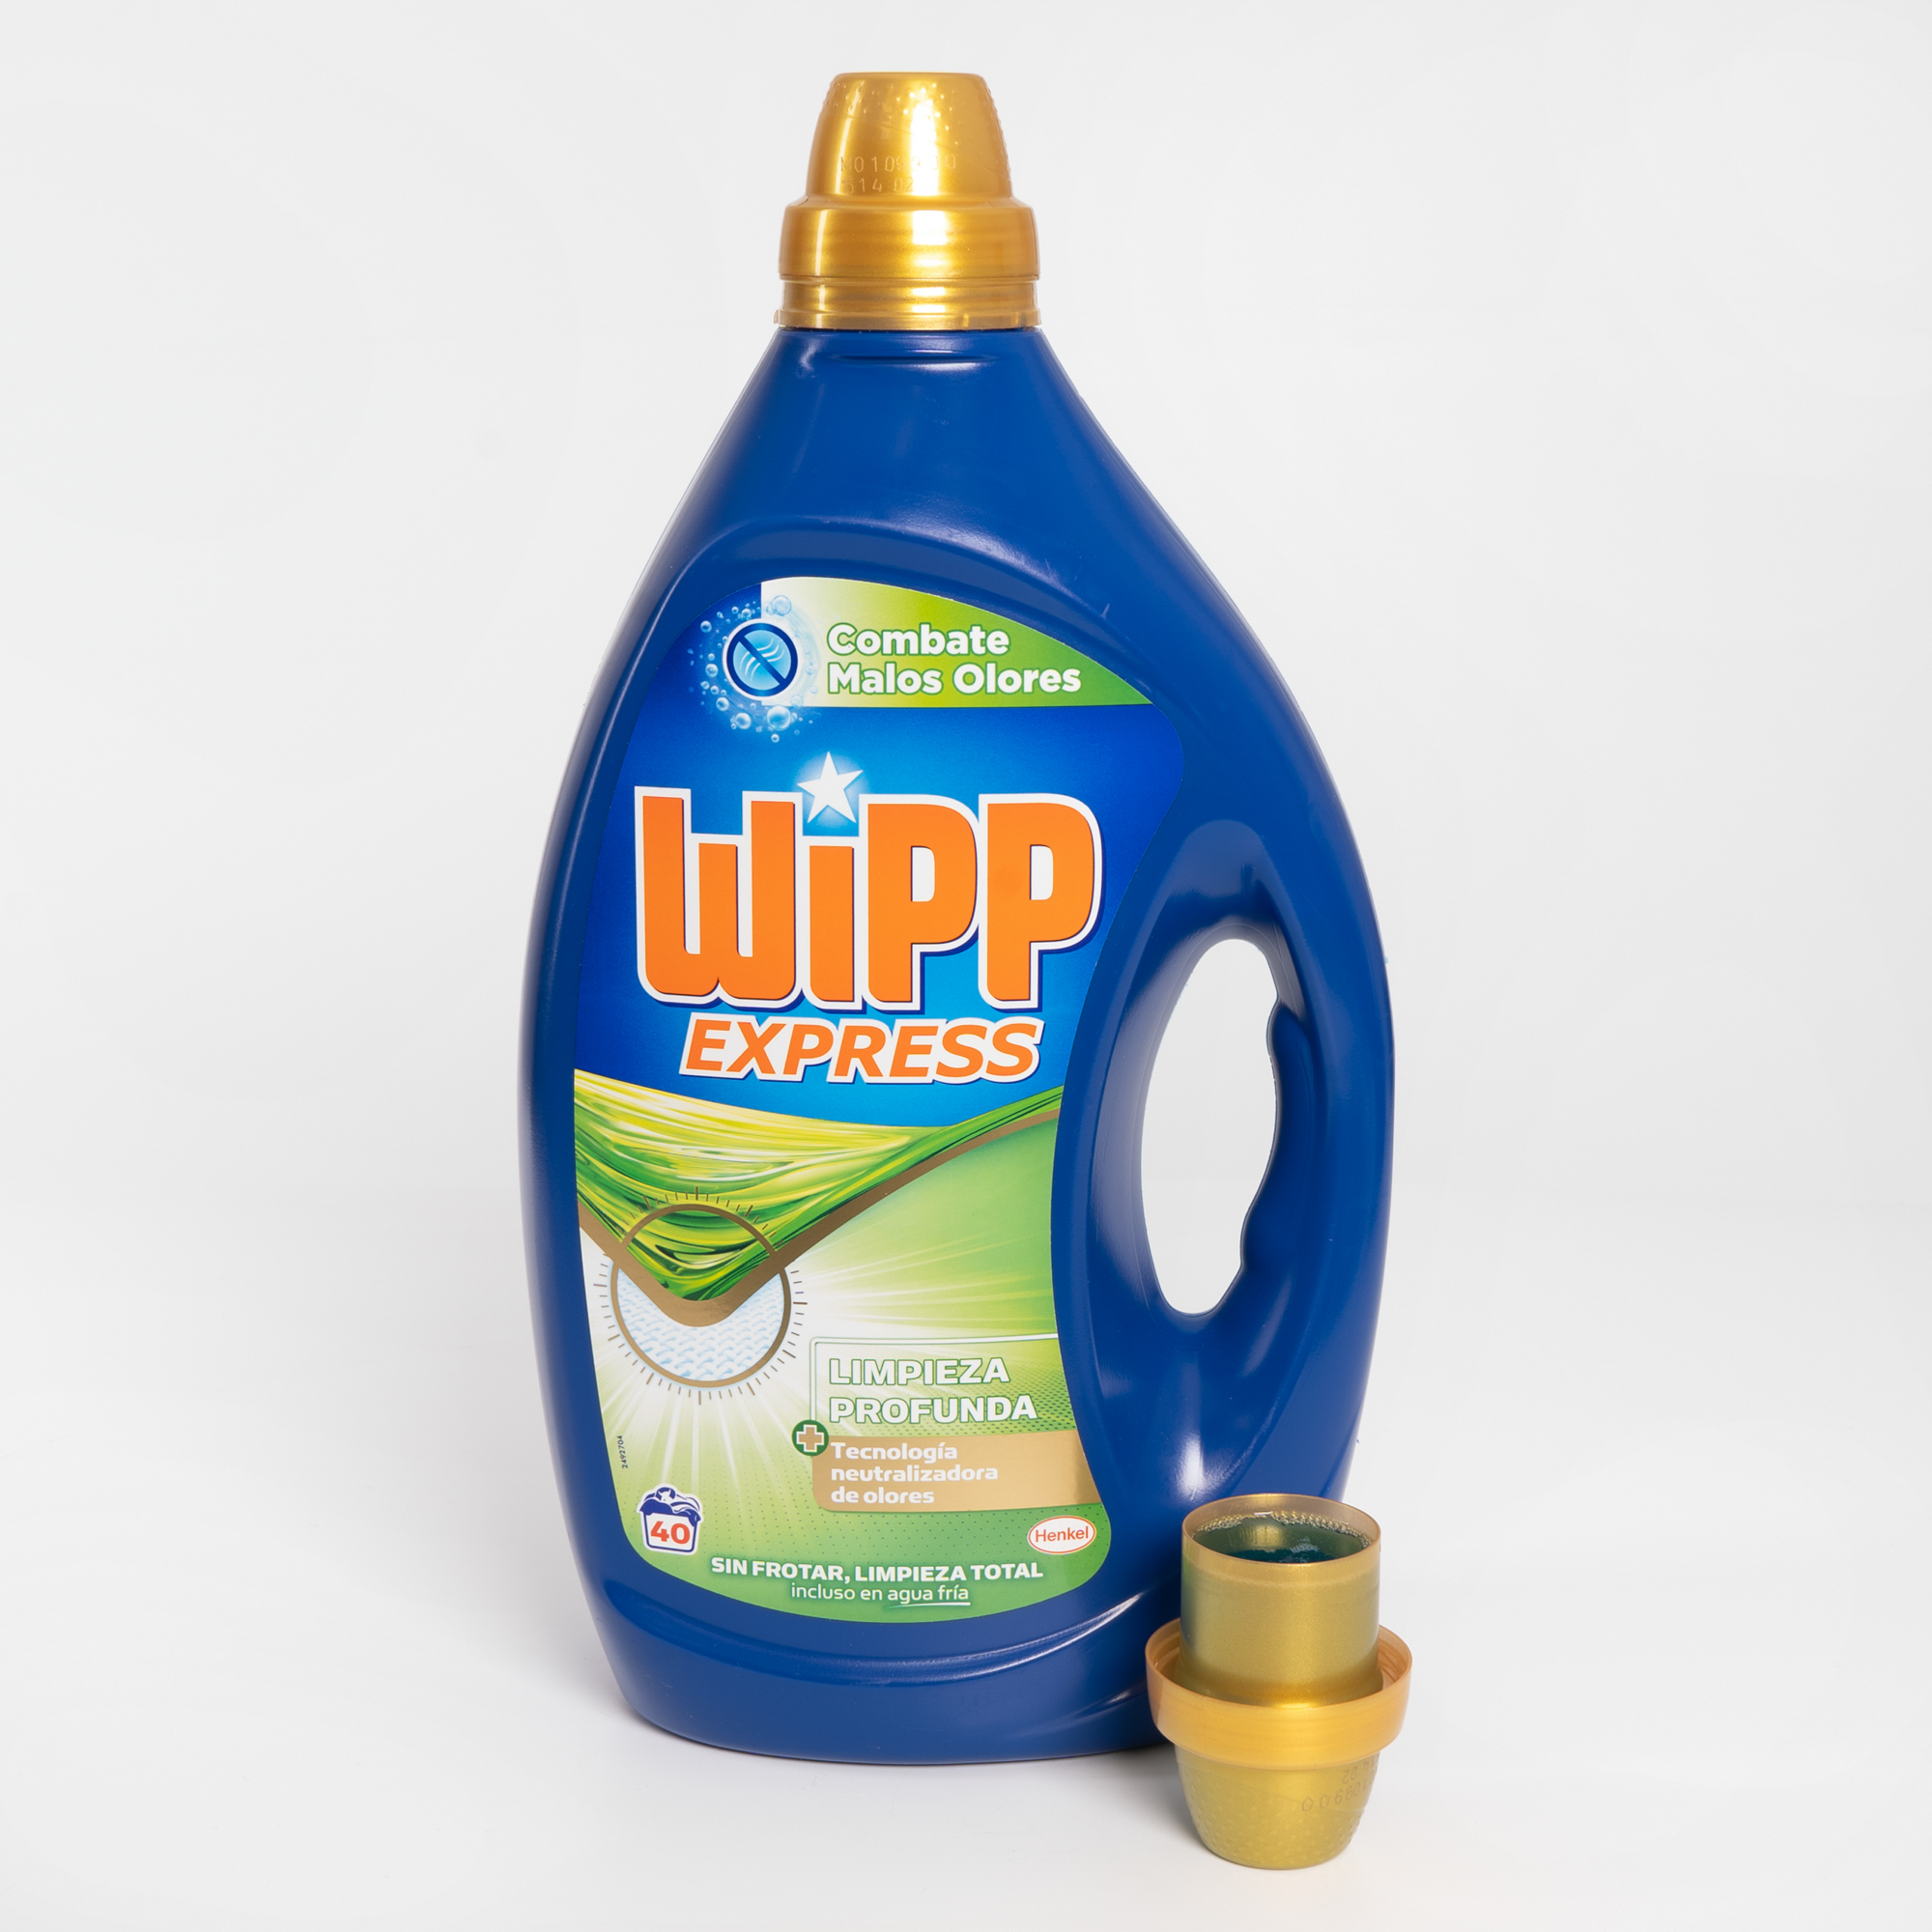 Wipp Express Combate Malos Olores Henkel